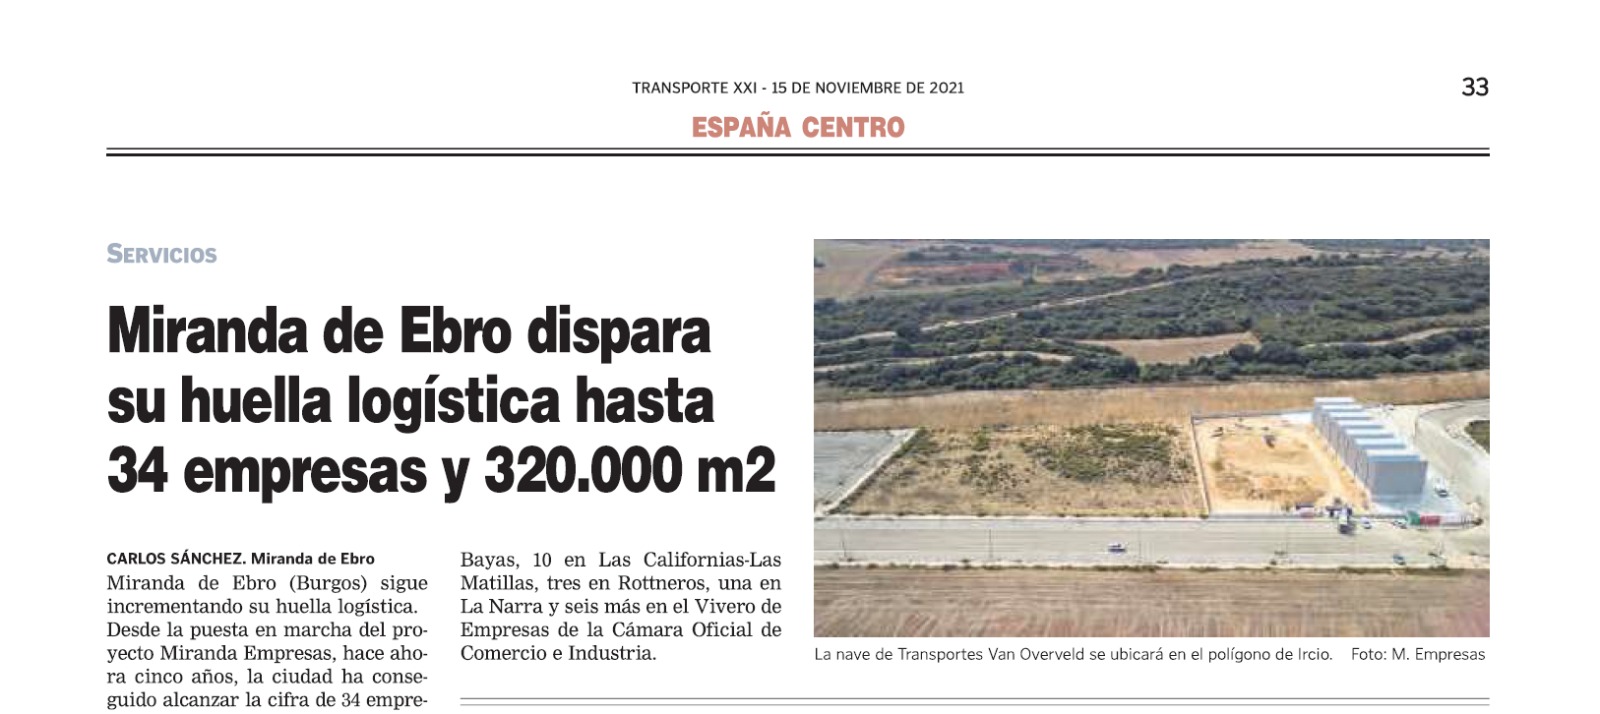 Transporte Siglo XXI: Miranda de Ebro dispara su huella logística hasta 34 empresas y 320.000m2